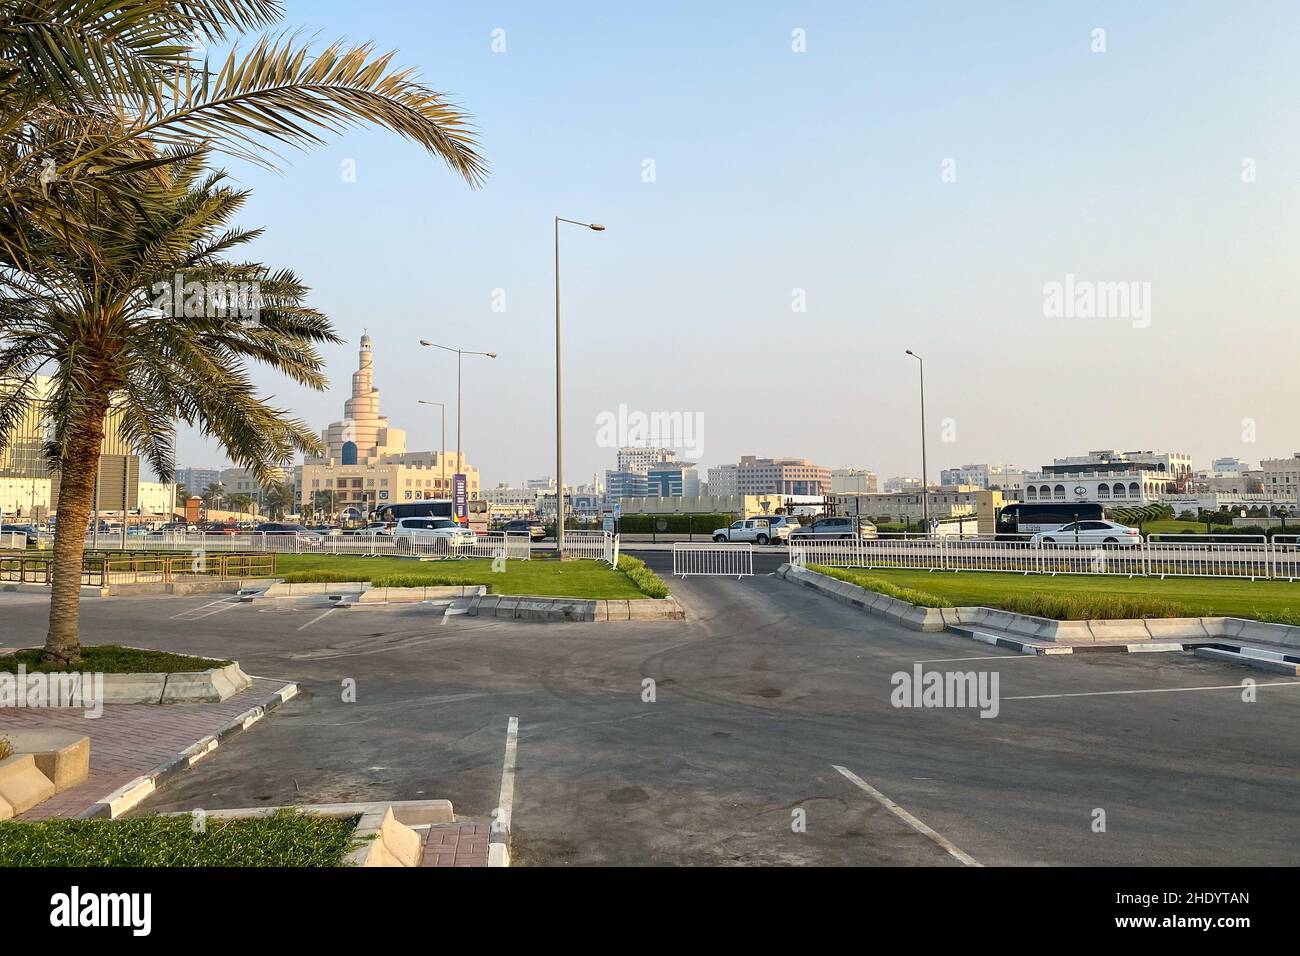 Ville historique de Doha, Qatar avec bâtiment Al Fanal et Centre culturel islamique du Qatar contre ciel bleu Banque D'Images